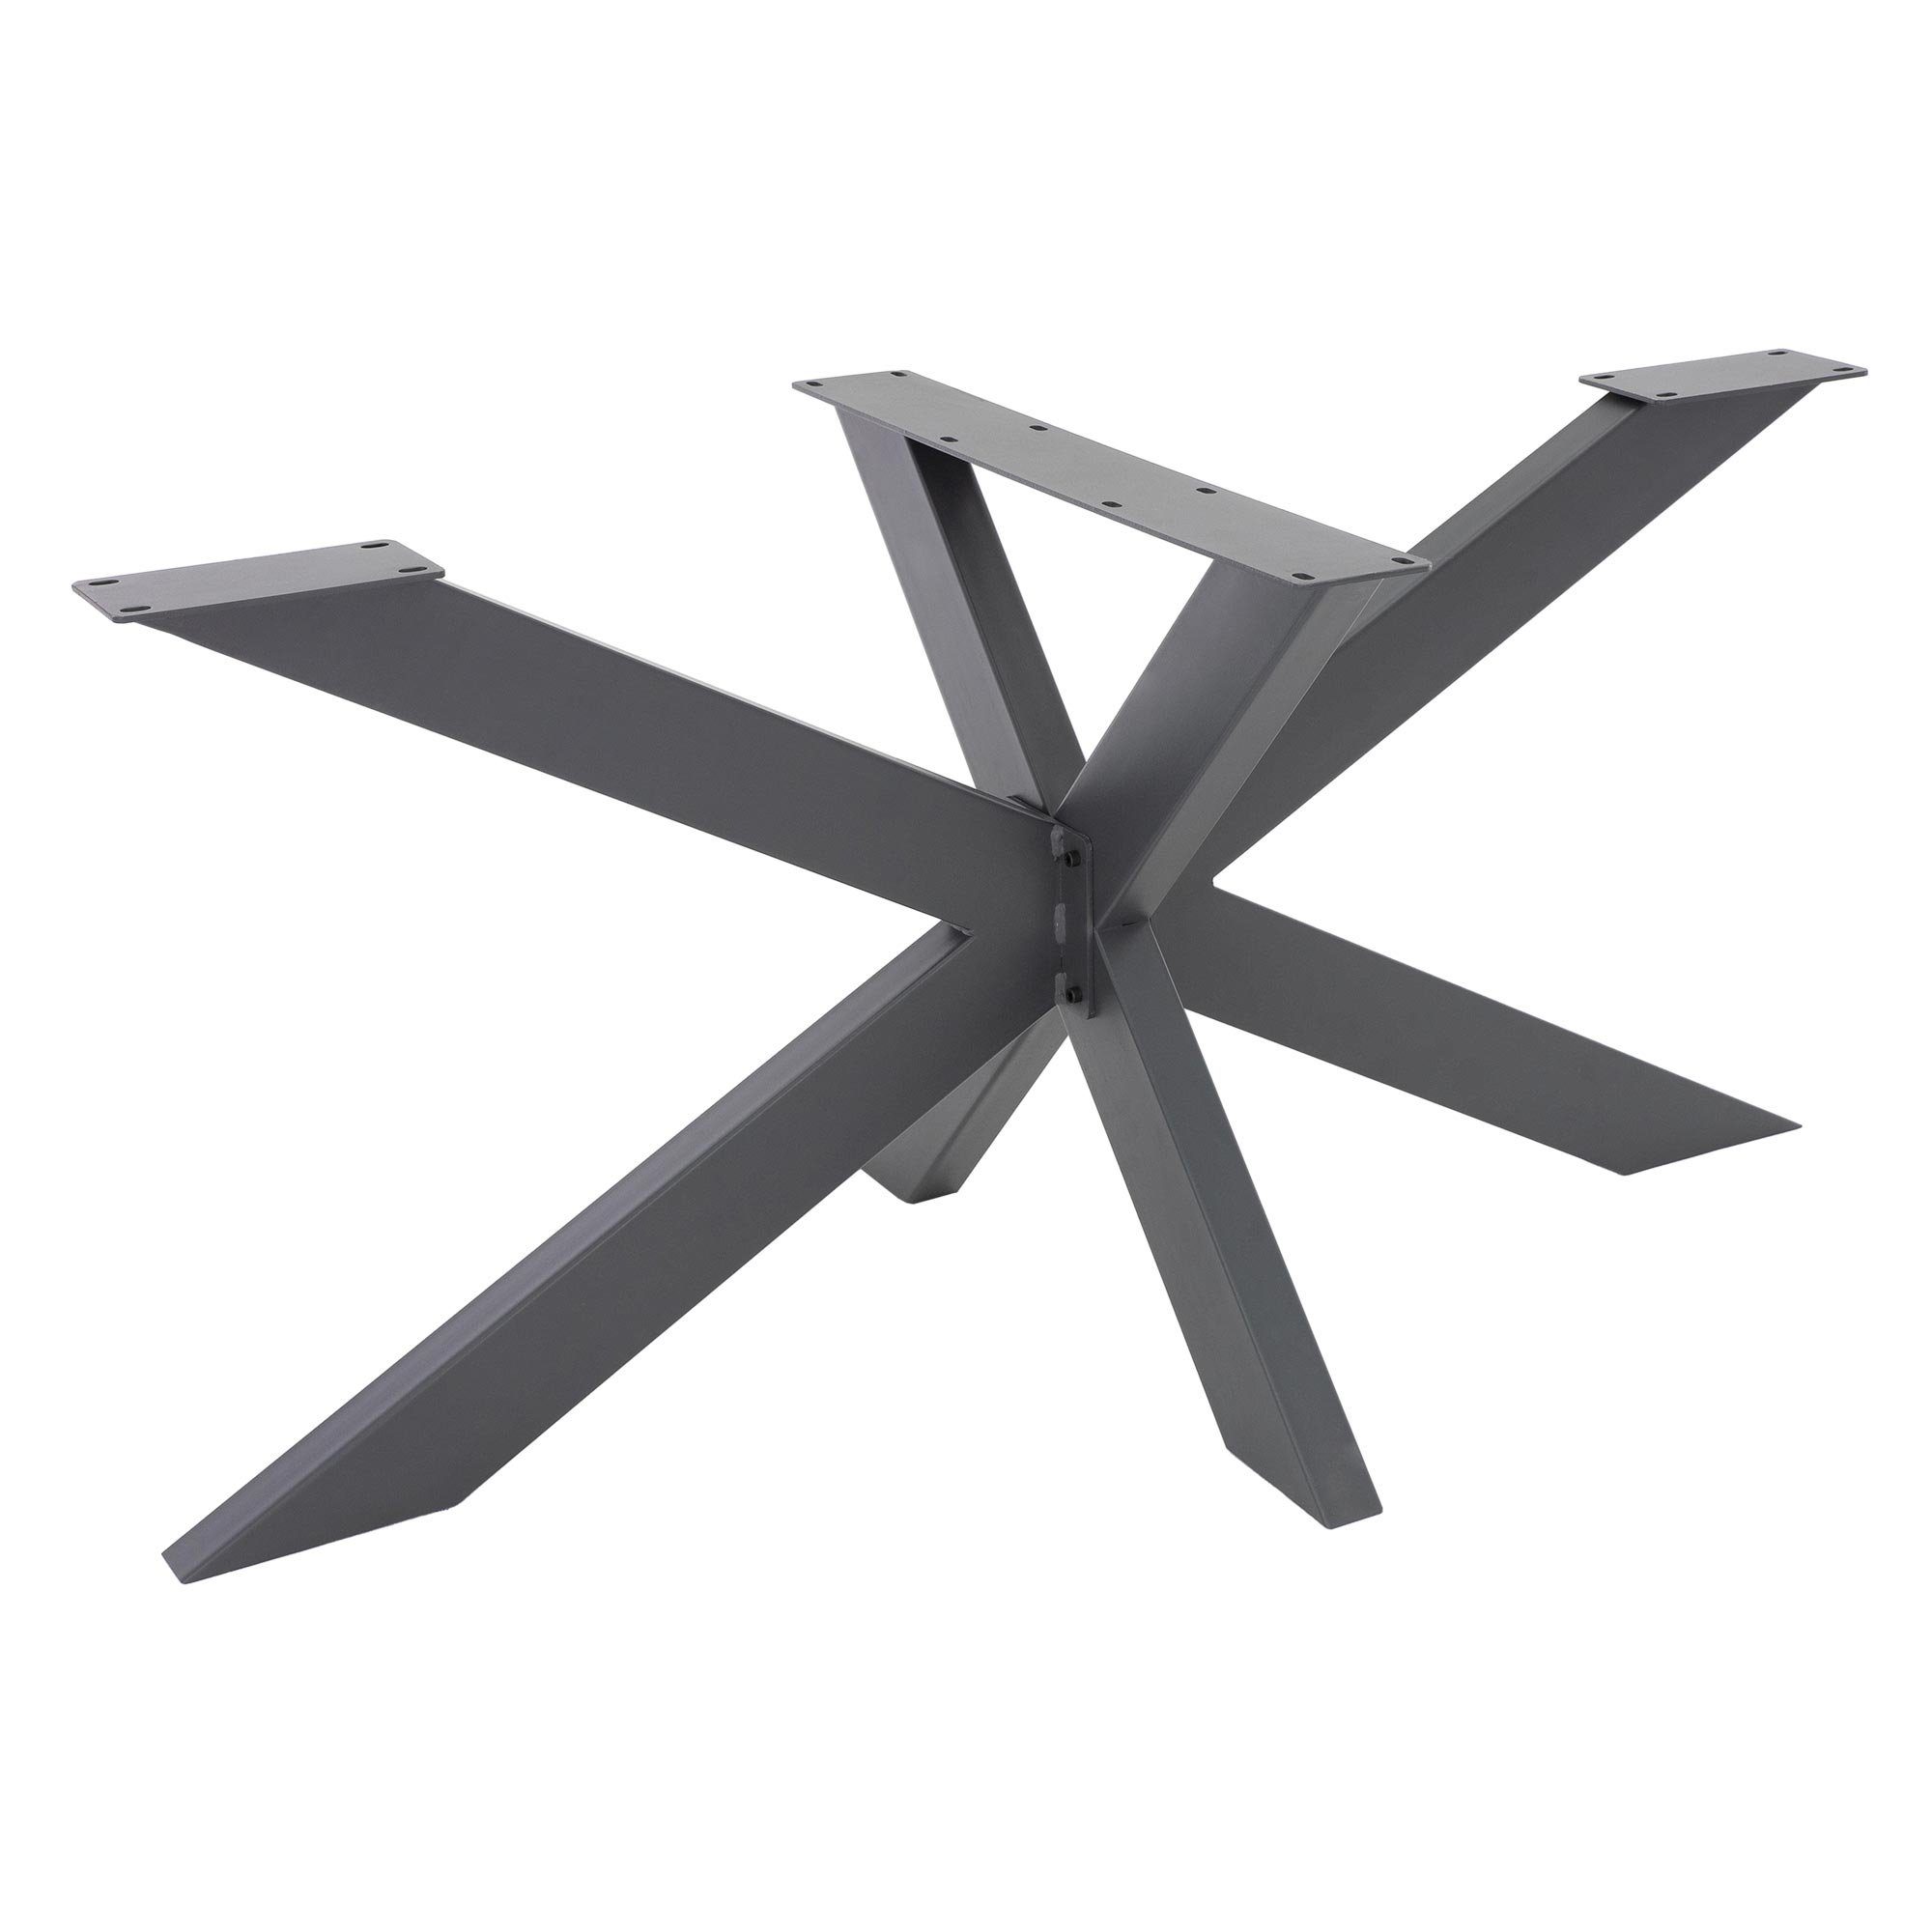 ML-DESIGN Tischbein Tischgestell Spider Kreuzgestell Tischfüße Möbelfüße Tischkufen DIY, Anthrazit 78x71x150cm X-Design Schwerlast Stahl Metall Industriedesign | Tischbeine